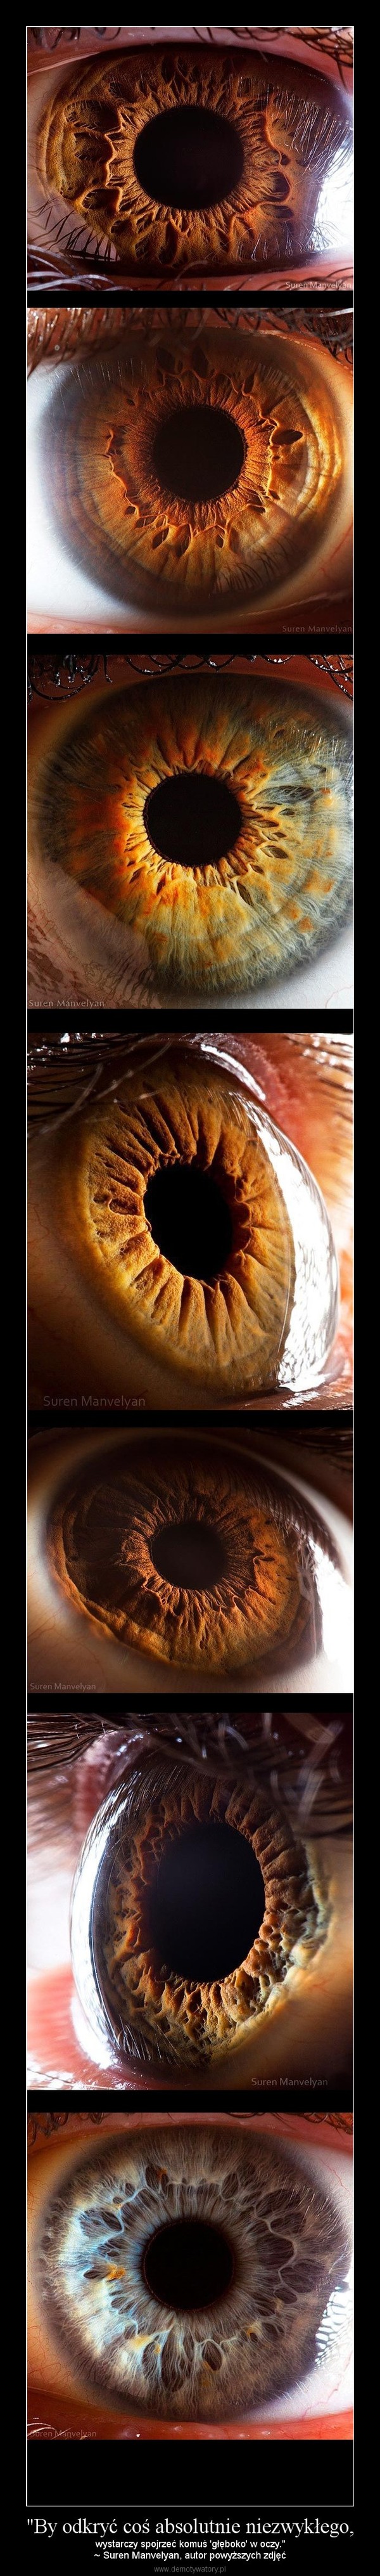 "By odkryć coś absolutnie niezwykłego, – wystarczy spojrzeć komuś 'głęboko' w oczy."~ Suren Manvelyan, autor powyższych zdjęć 